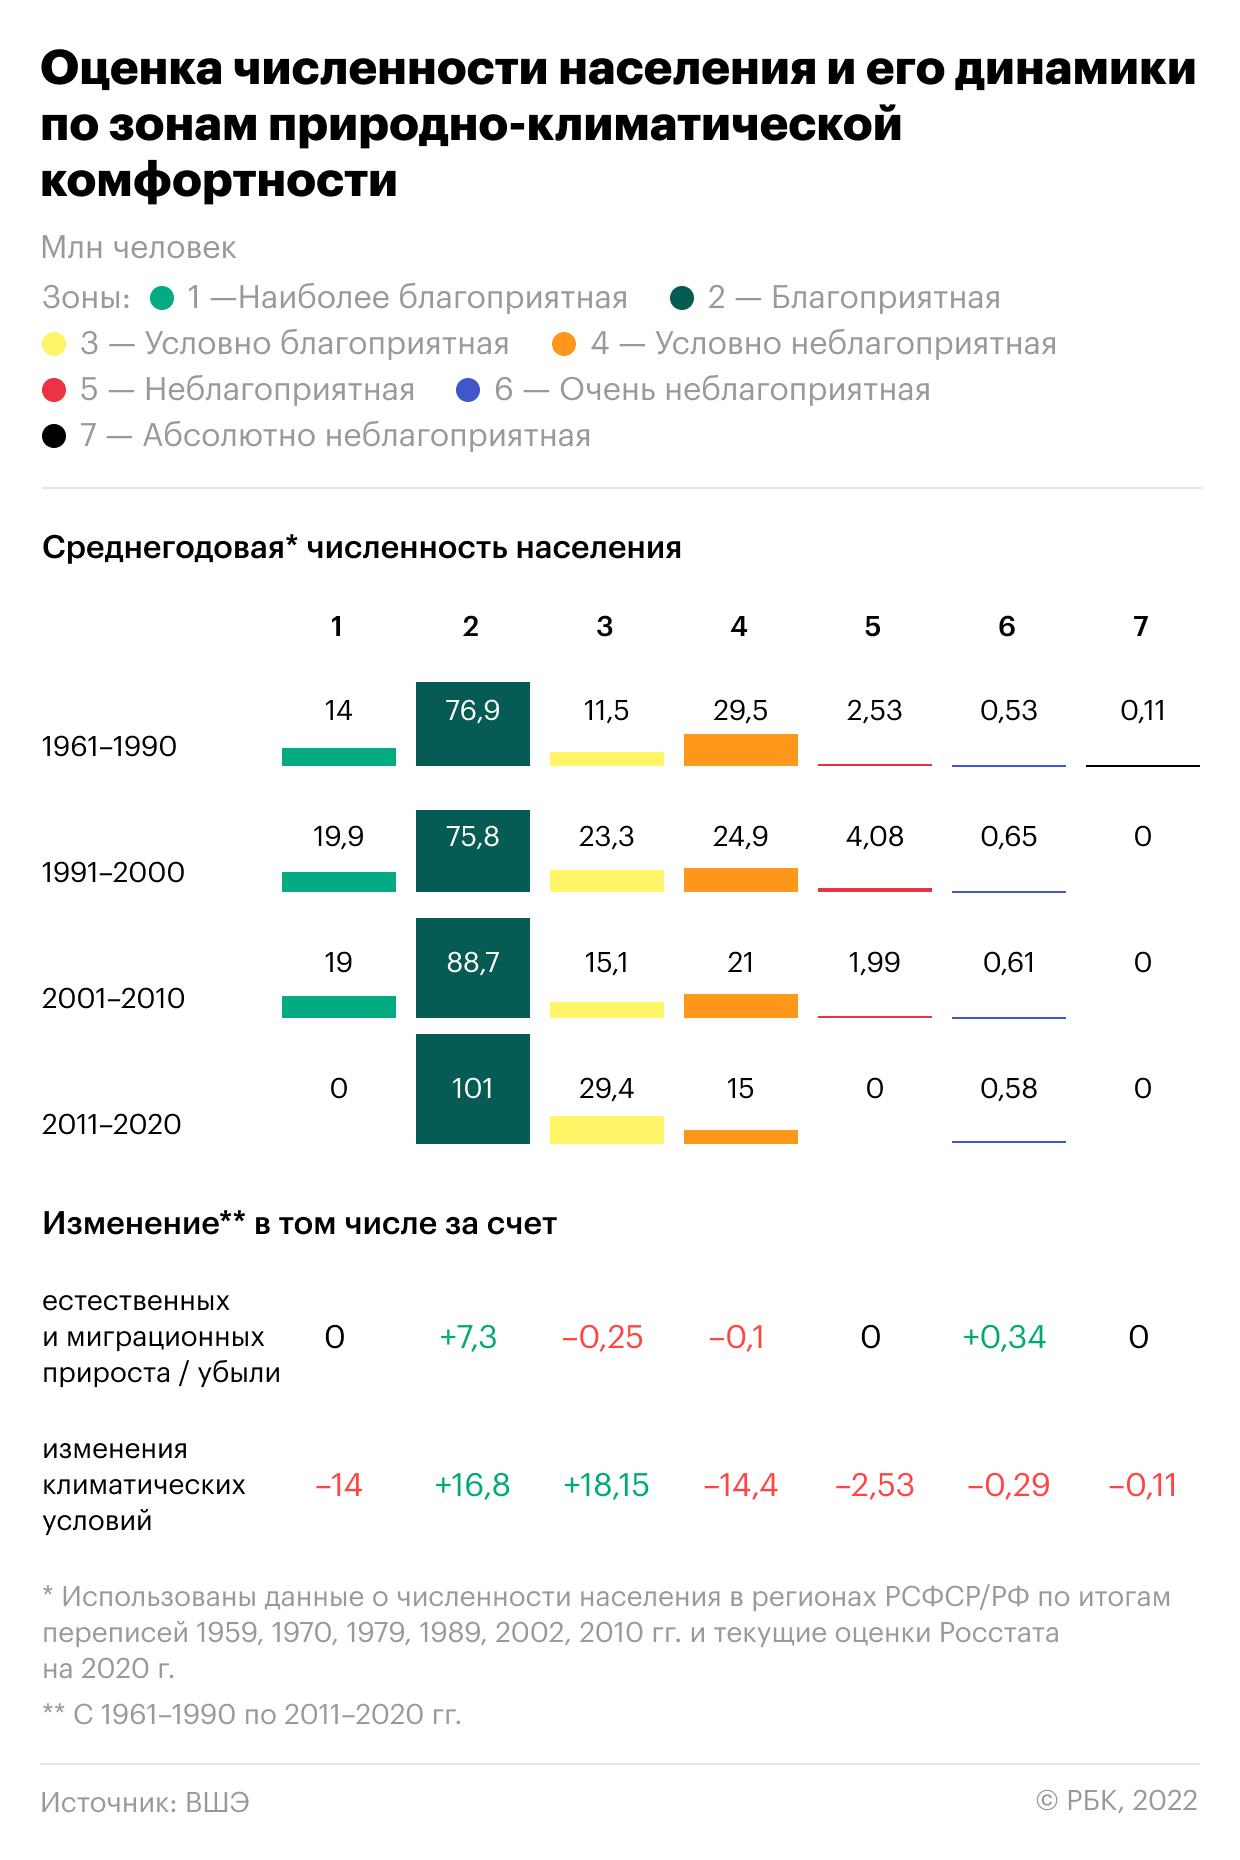 Как климатические изменения затронут жителей различных регионов России